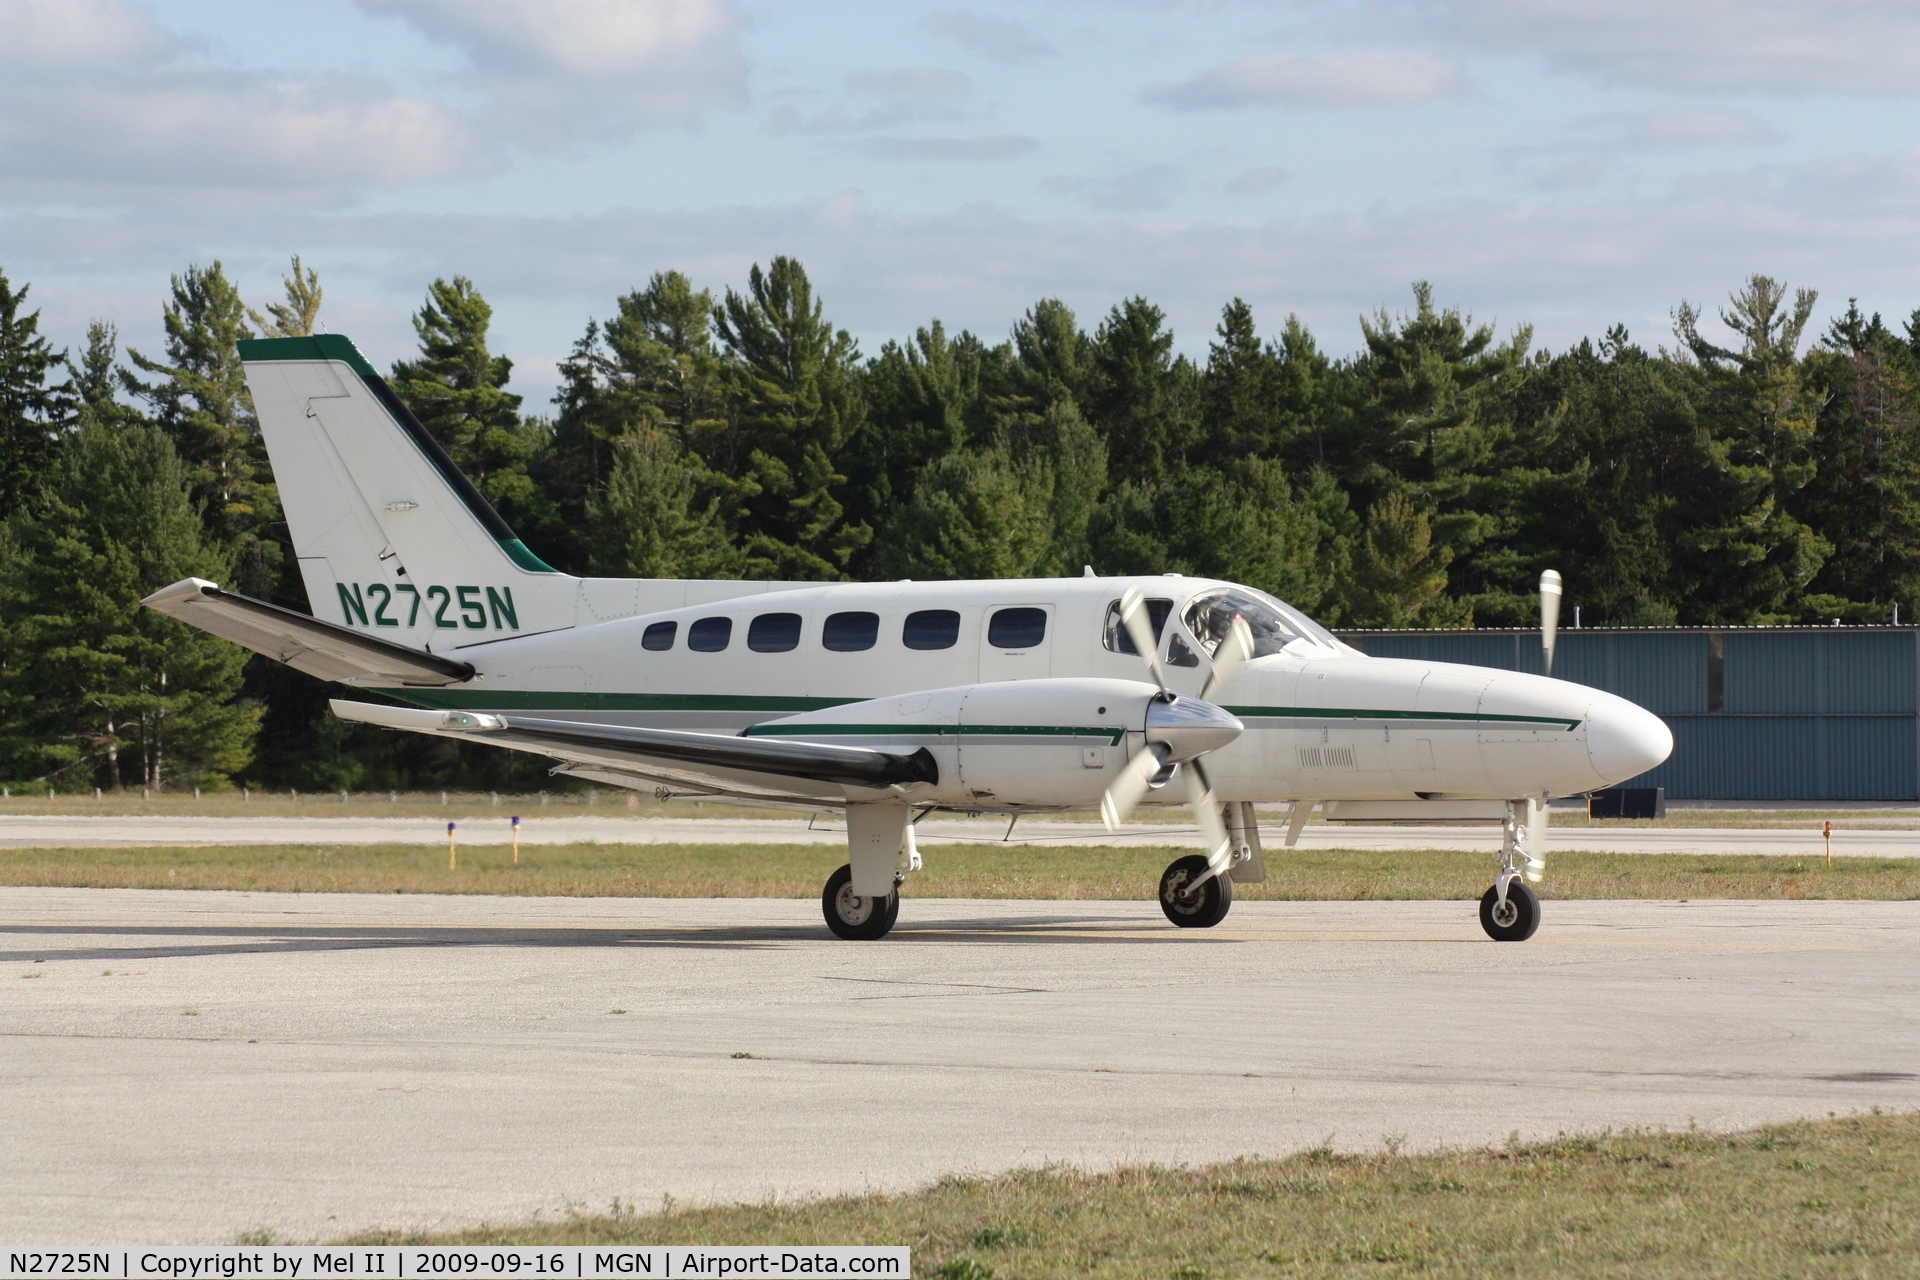 N2725N, 1980 Cessna 441 Conquest II C/N 441-0190, KMGN-KMSN - Taxi For Departure RWY 10